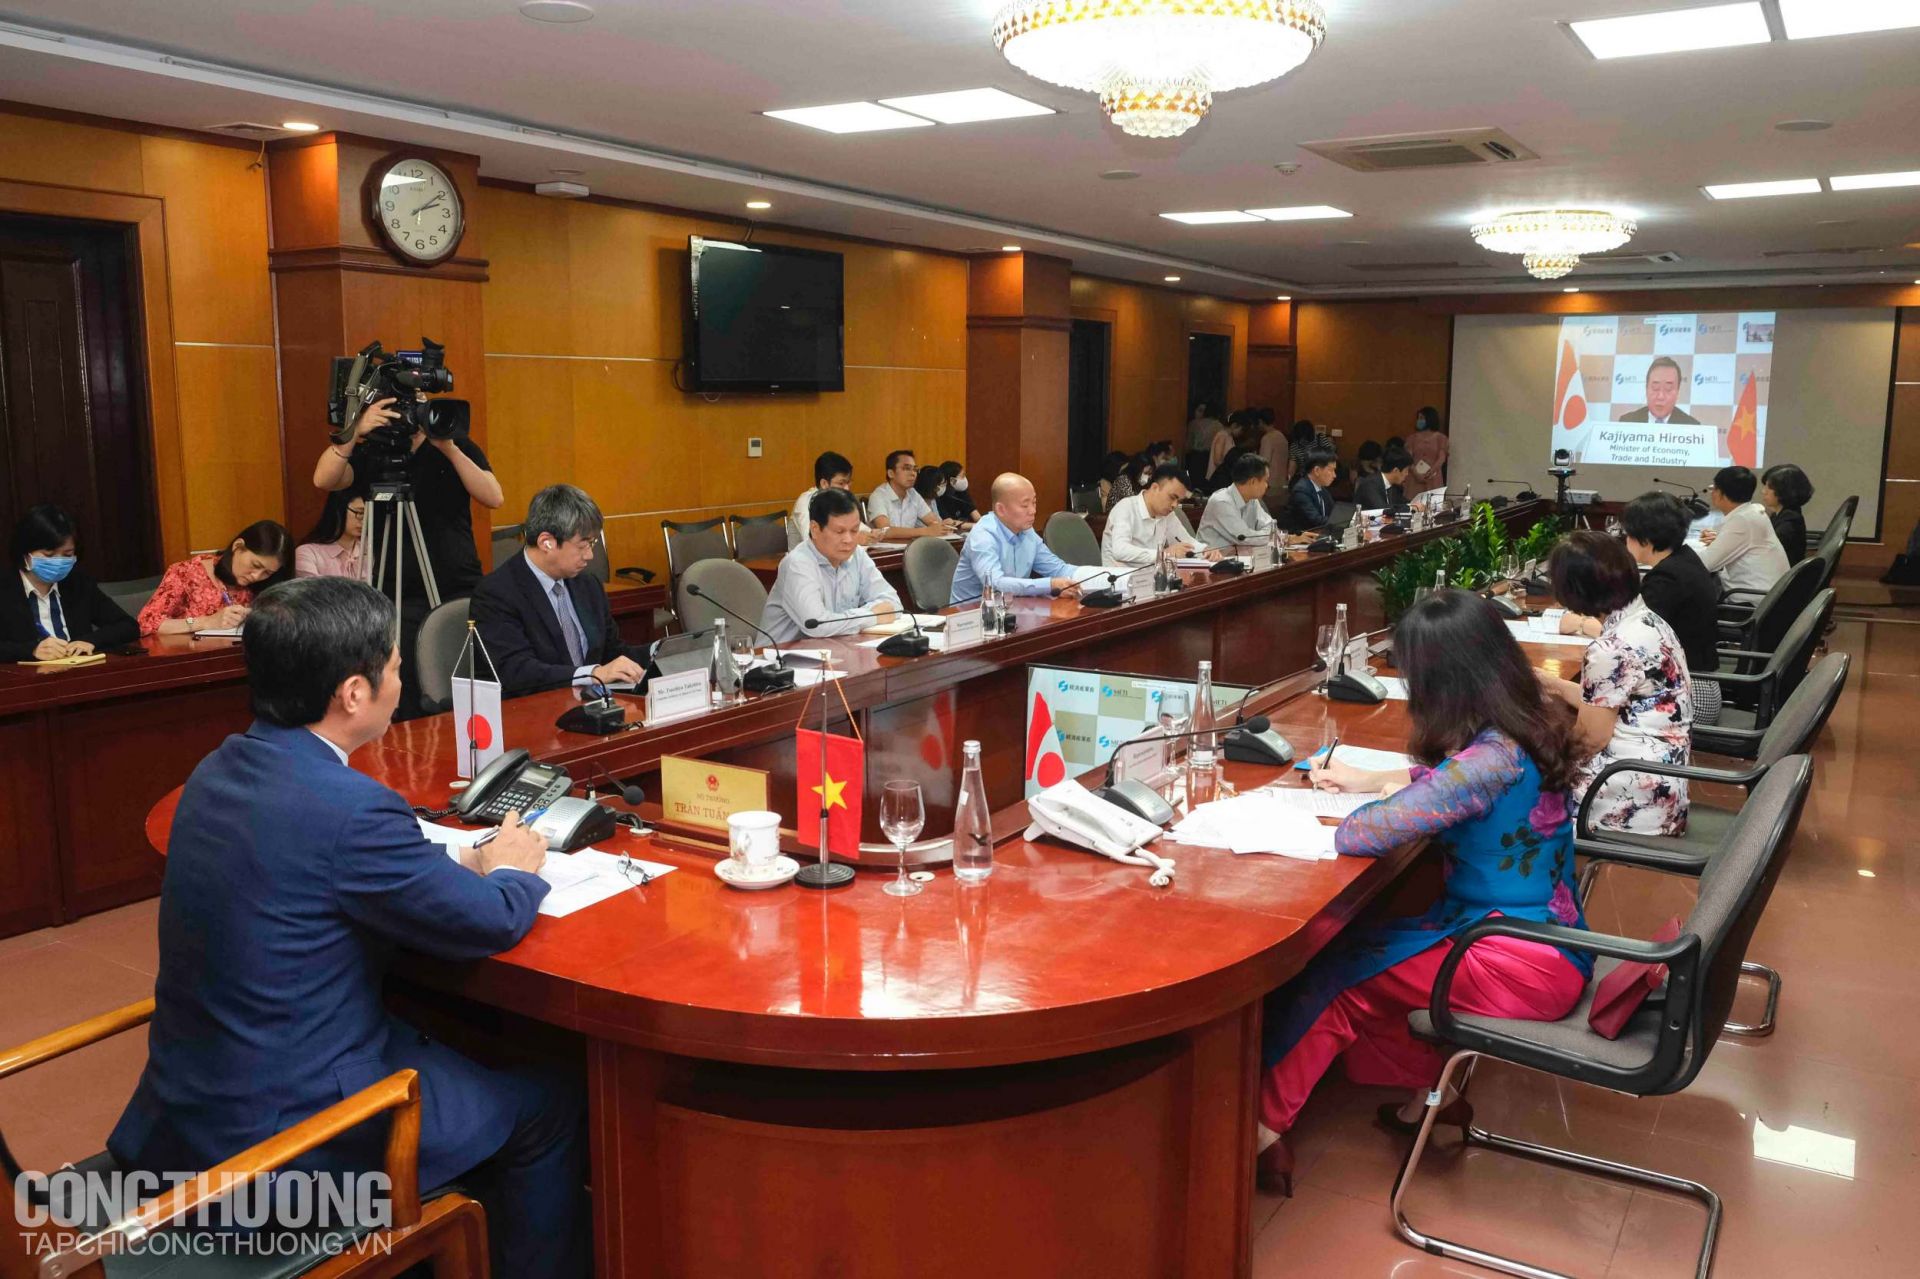 Kỳ họp thứ 4 UBHH Việt Nam - Nhật Bản diễn ra theo hình thức trực tuyến